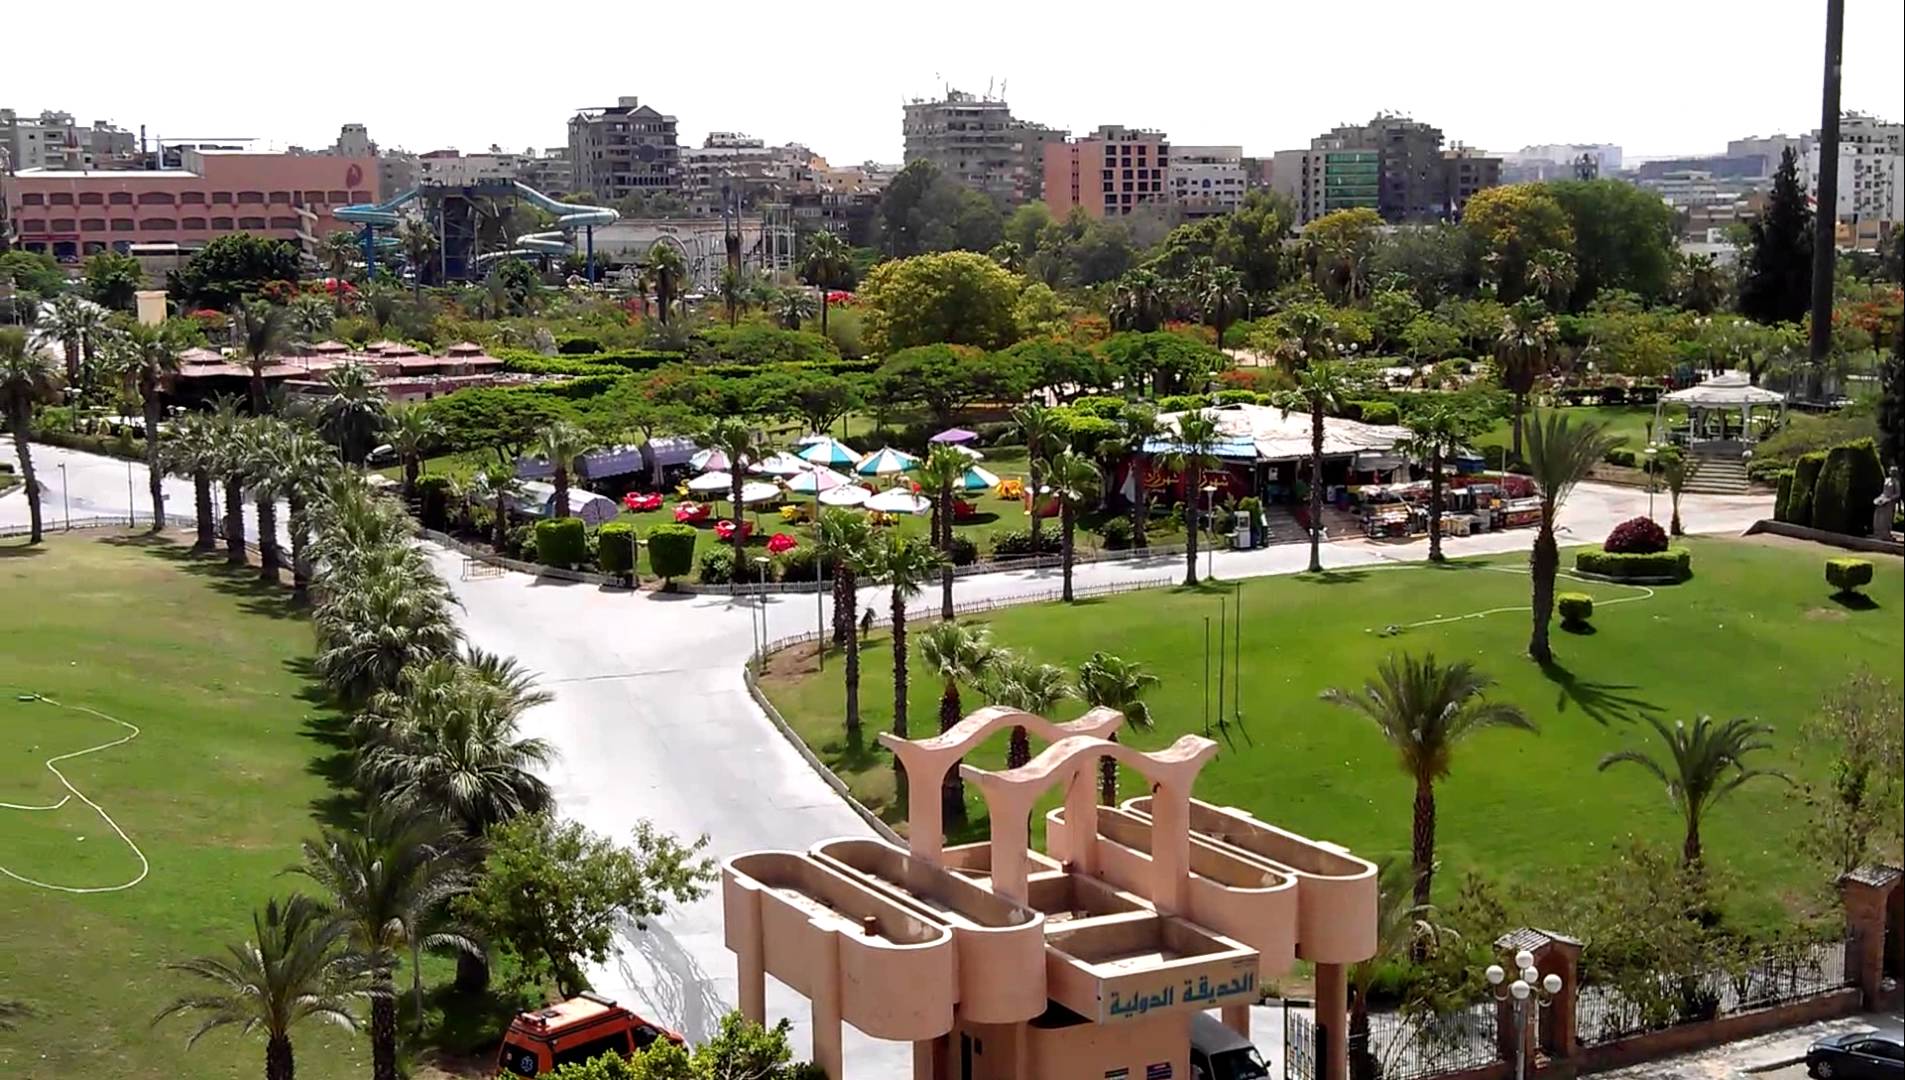   حديقة مكسيكية.. إهداء للدولة المصرية